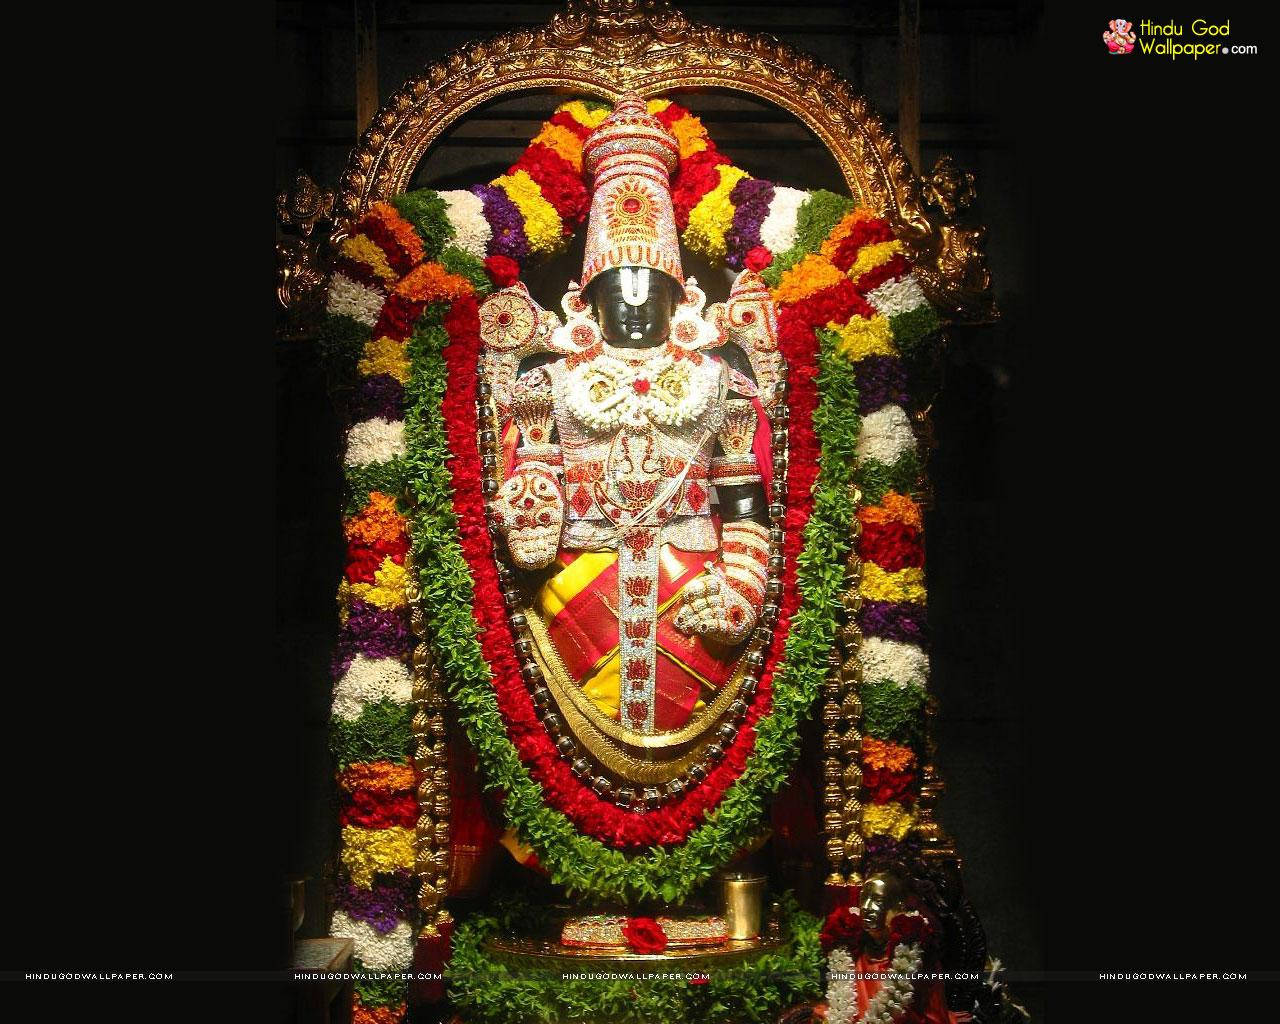 Tirupati Balaji Pilgrimage Site Background